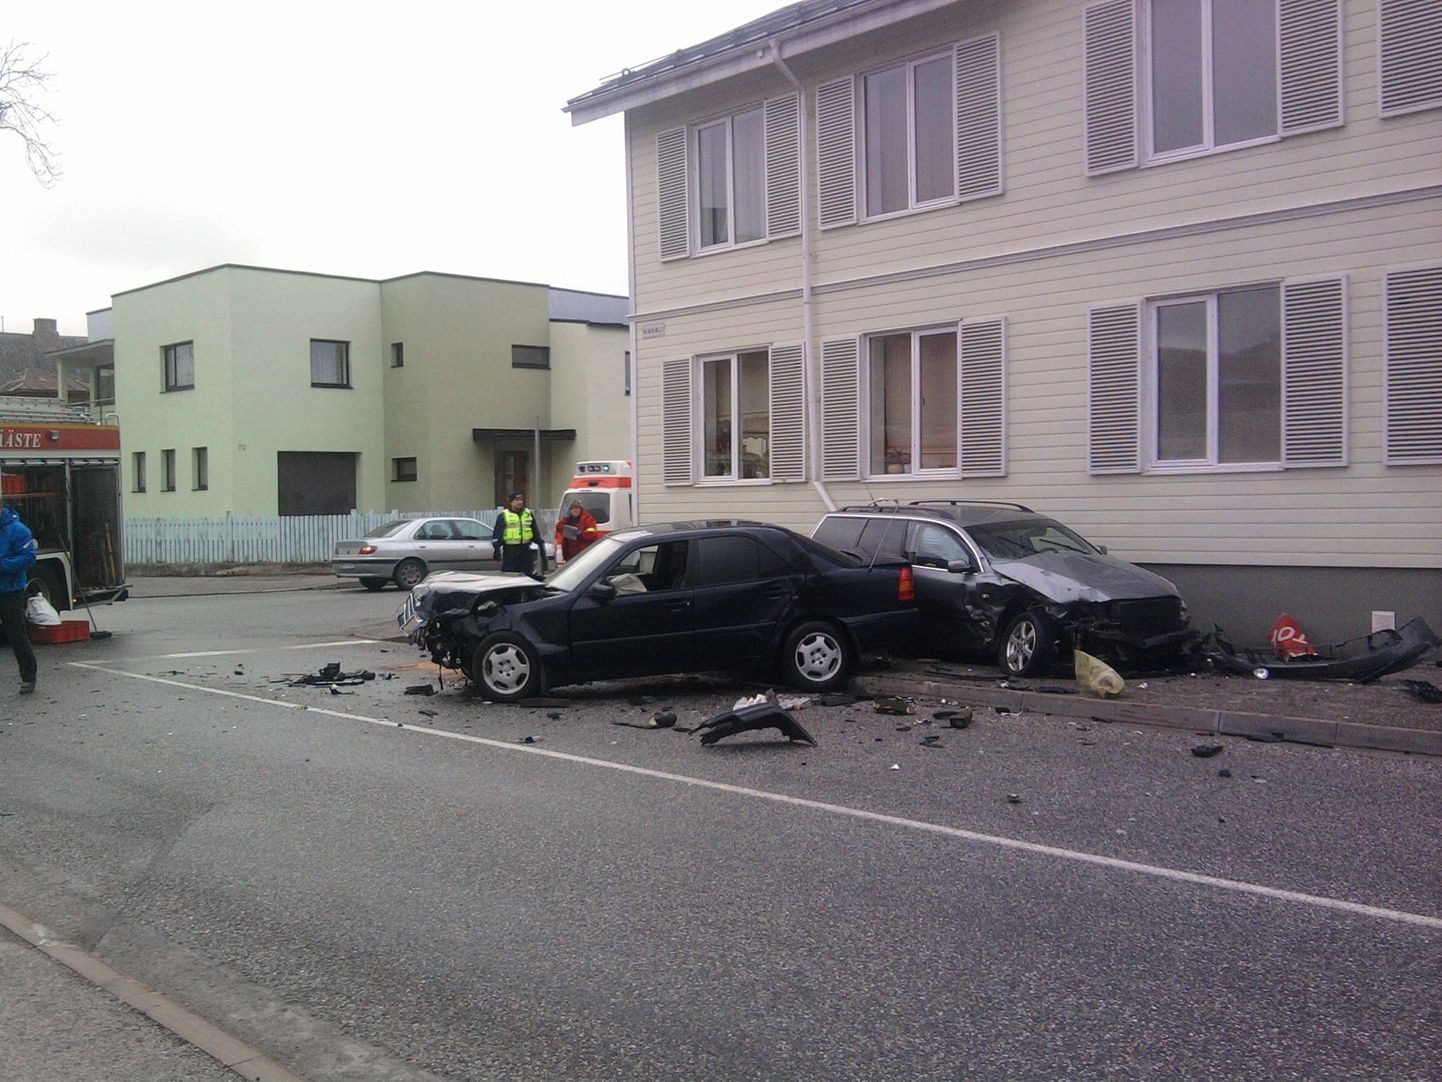 Liiklusõnnetus Karusselli ja Kanali tänava ristmikul.